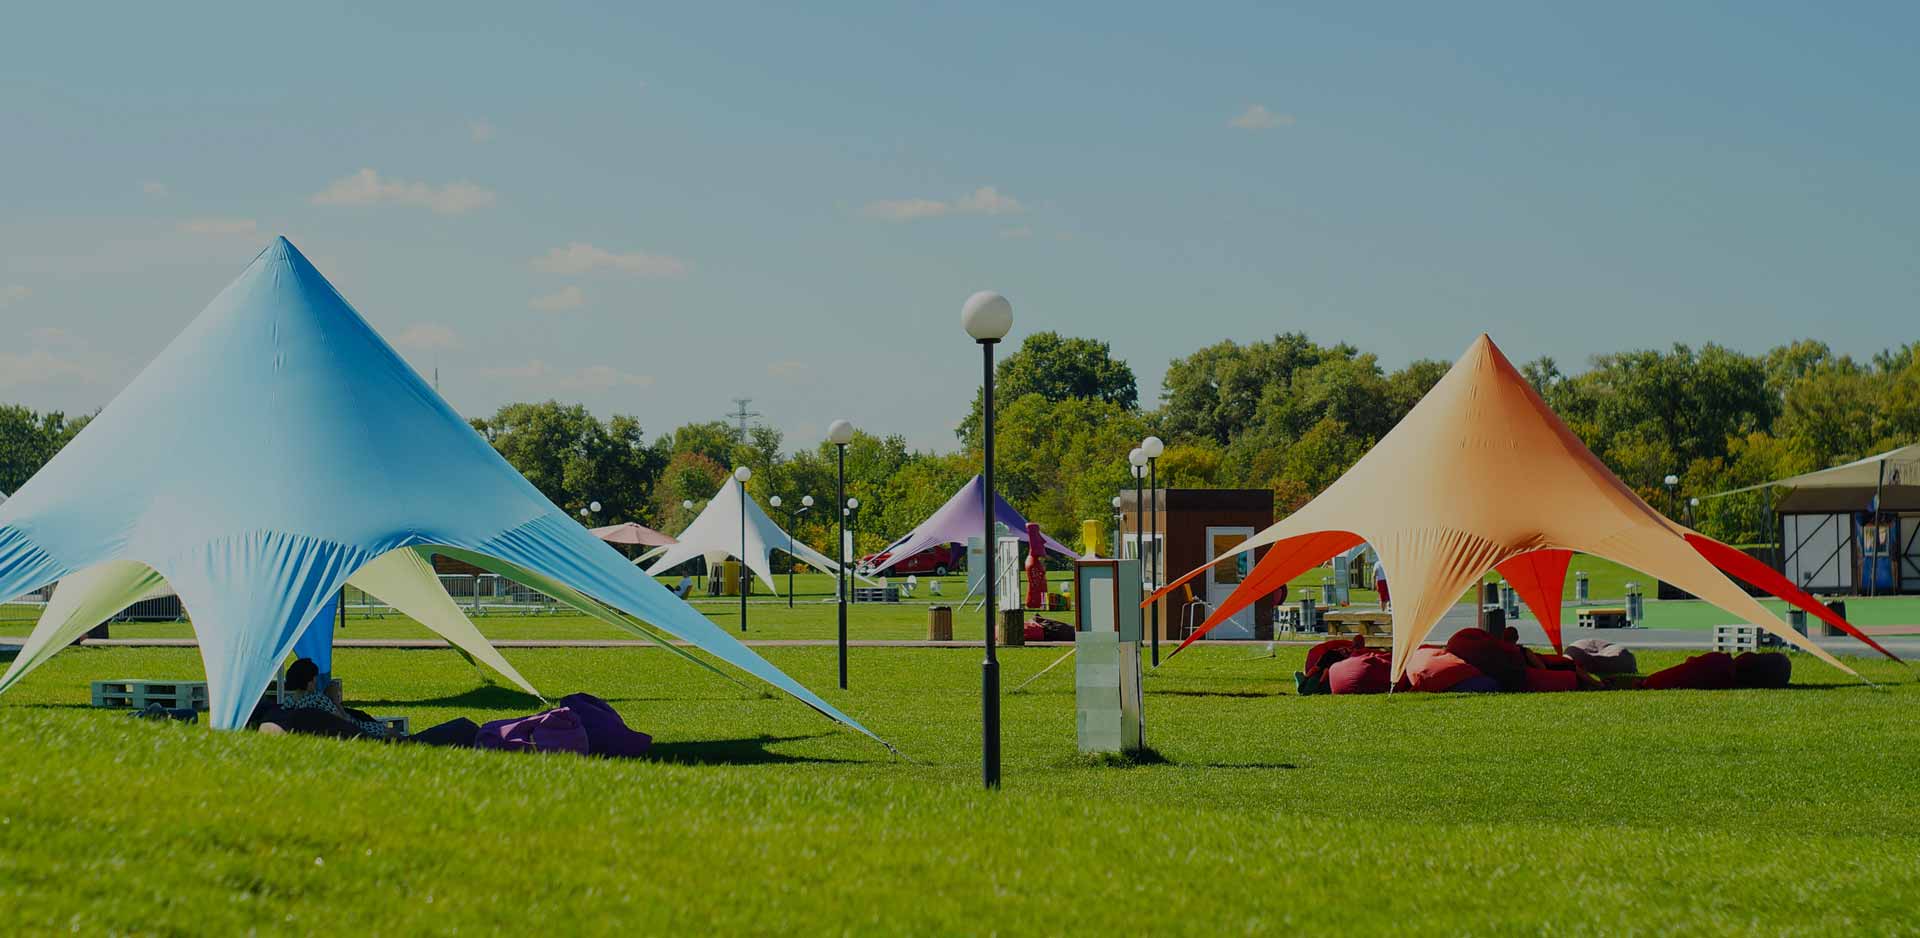 al-mi - Producent flag, namioty reklamowe, balony pneumatyczne, bramy, flagi i maszty, ścianki wystawiennicze, parasole, roll up, meble, zestaw piknikowy, baner